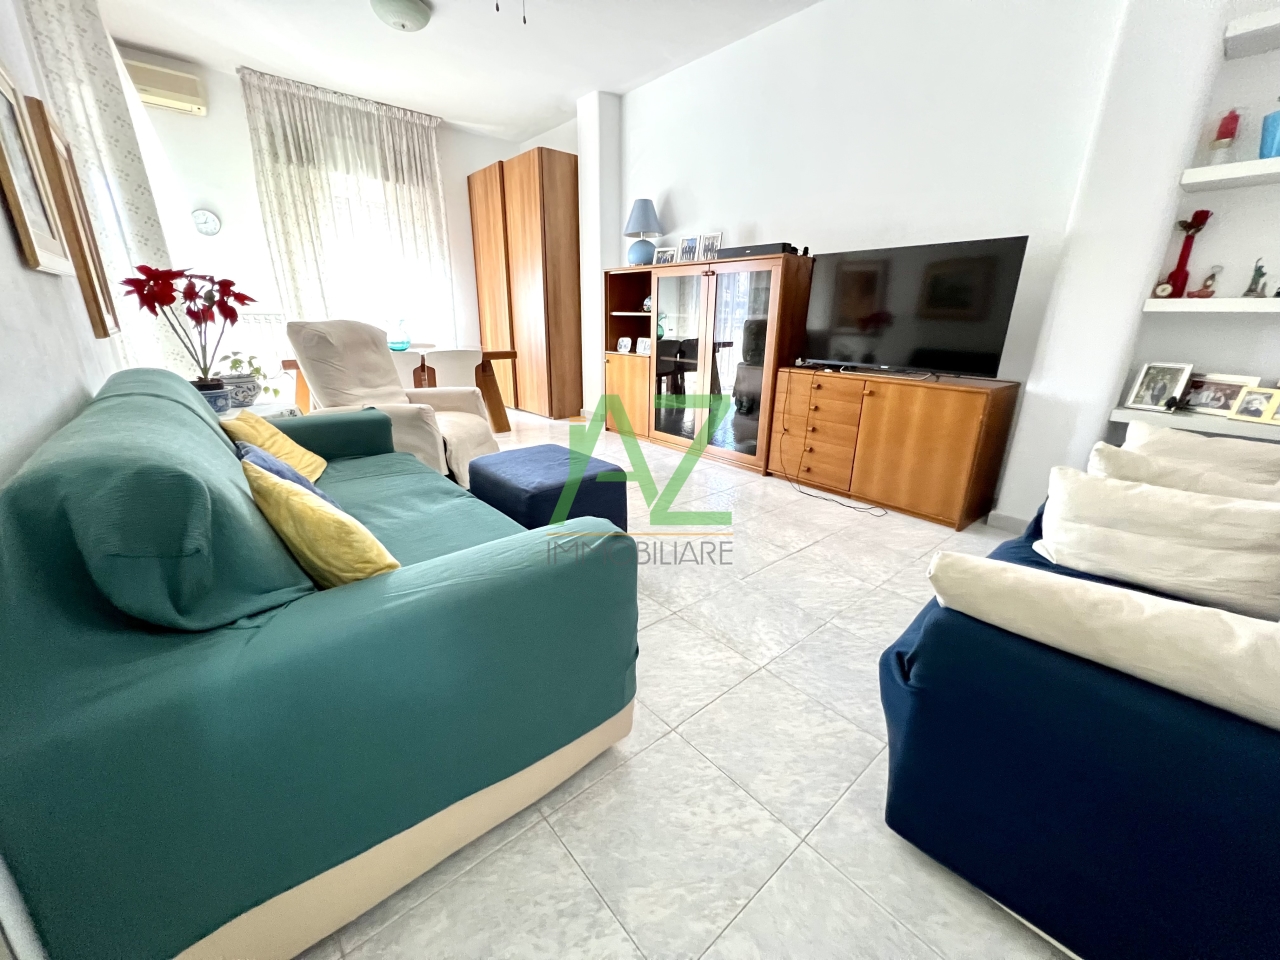 Appartamento in vendita a Misterbianco, 4 locali, prezzo € 115.000 | PortaleAgenzieImmobiliari.it